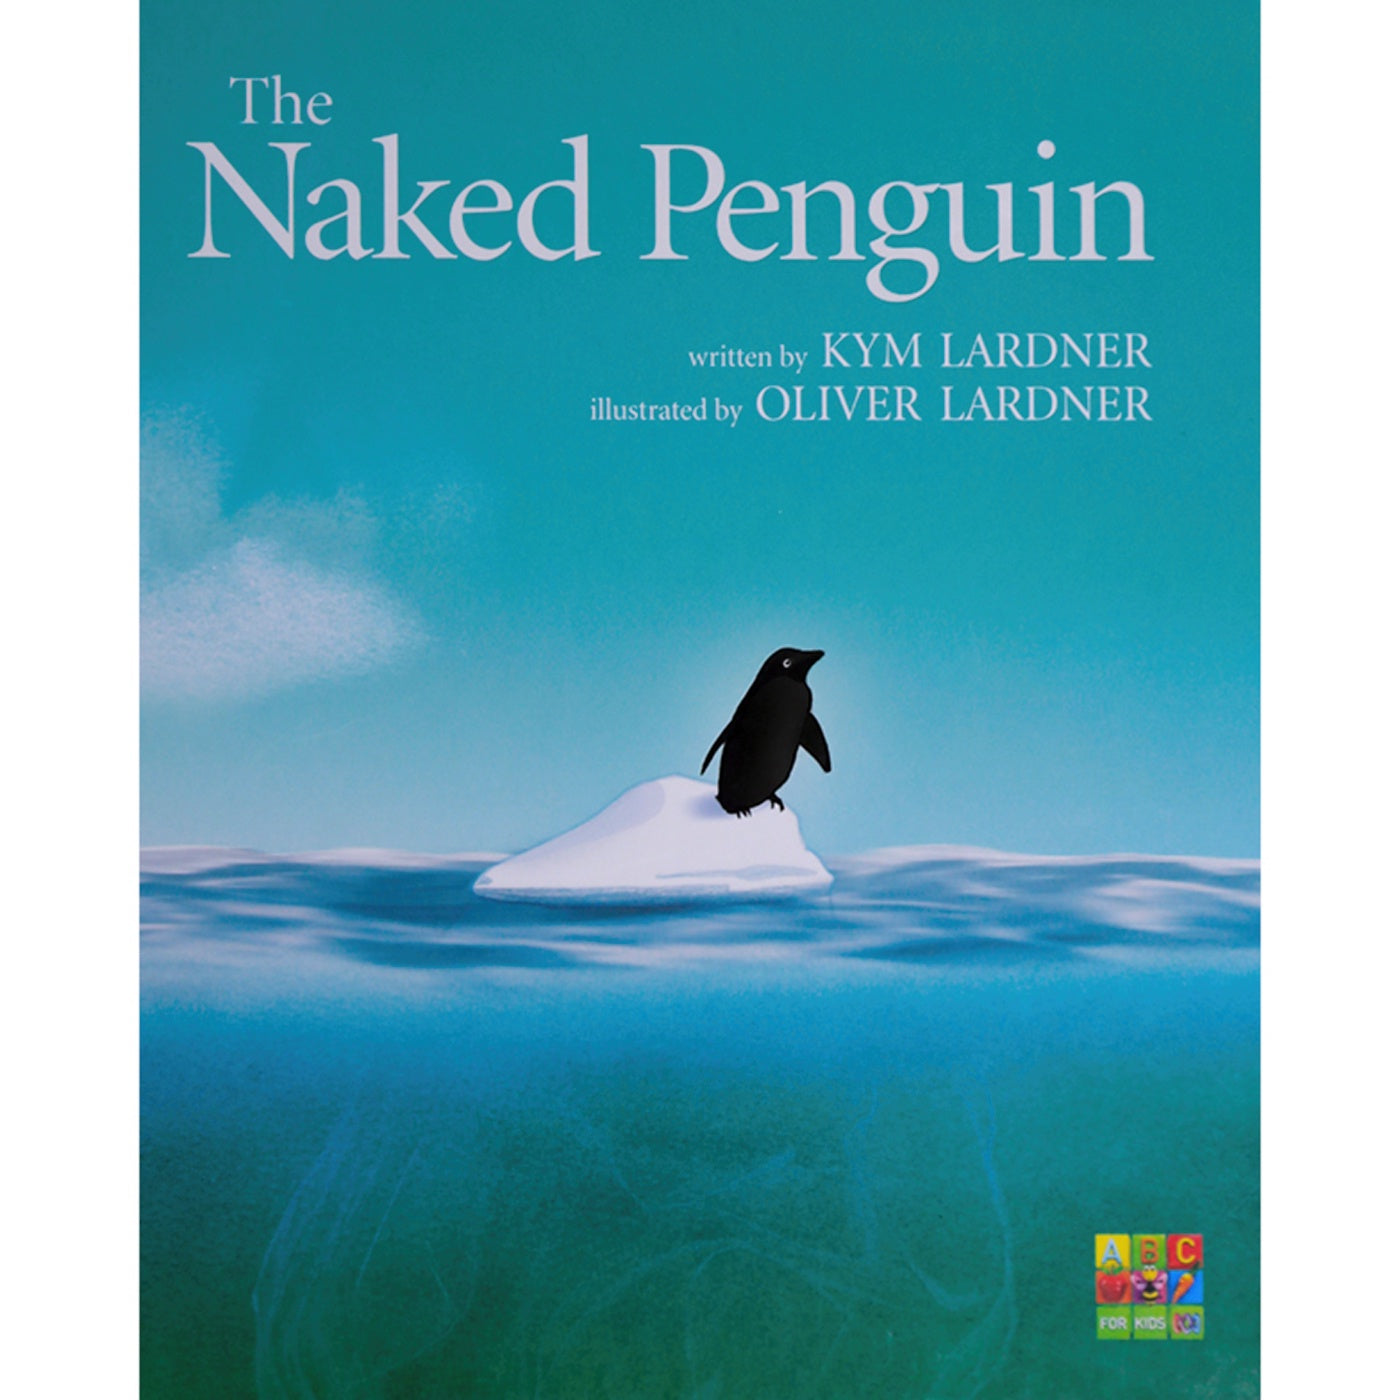 The Naked Penguin